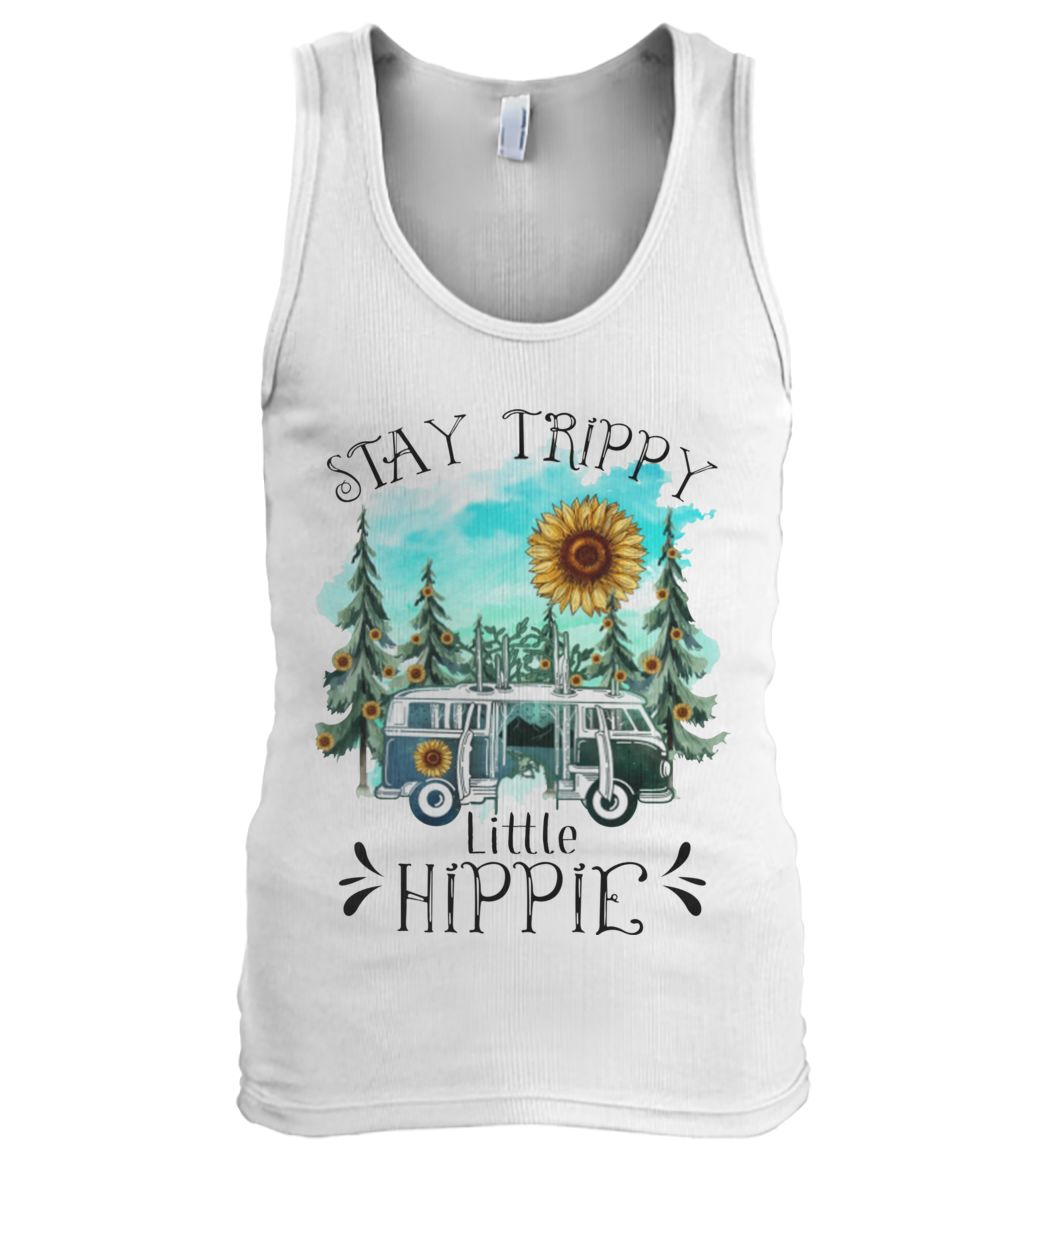 Sunflower stay trippy little hippie men's tank top